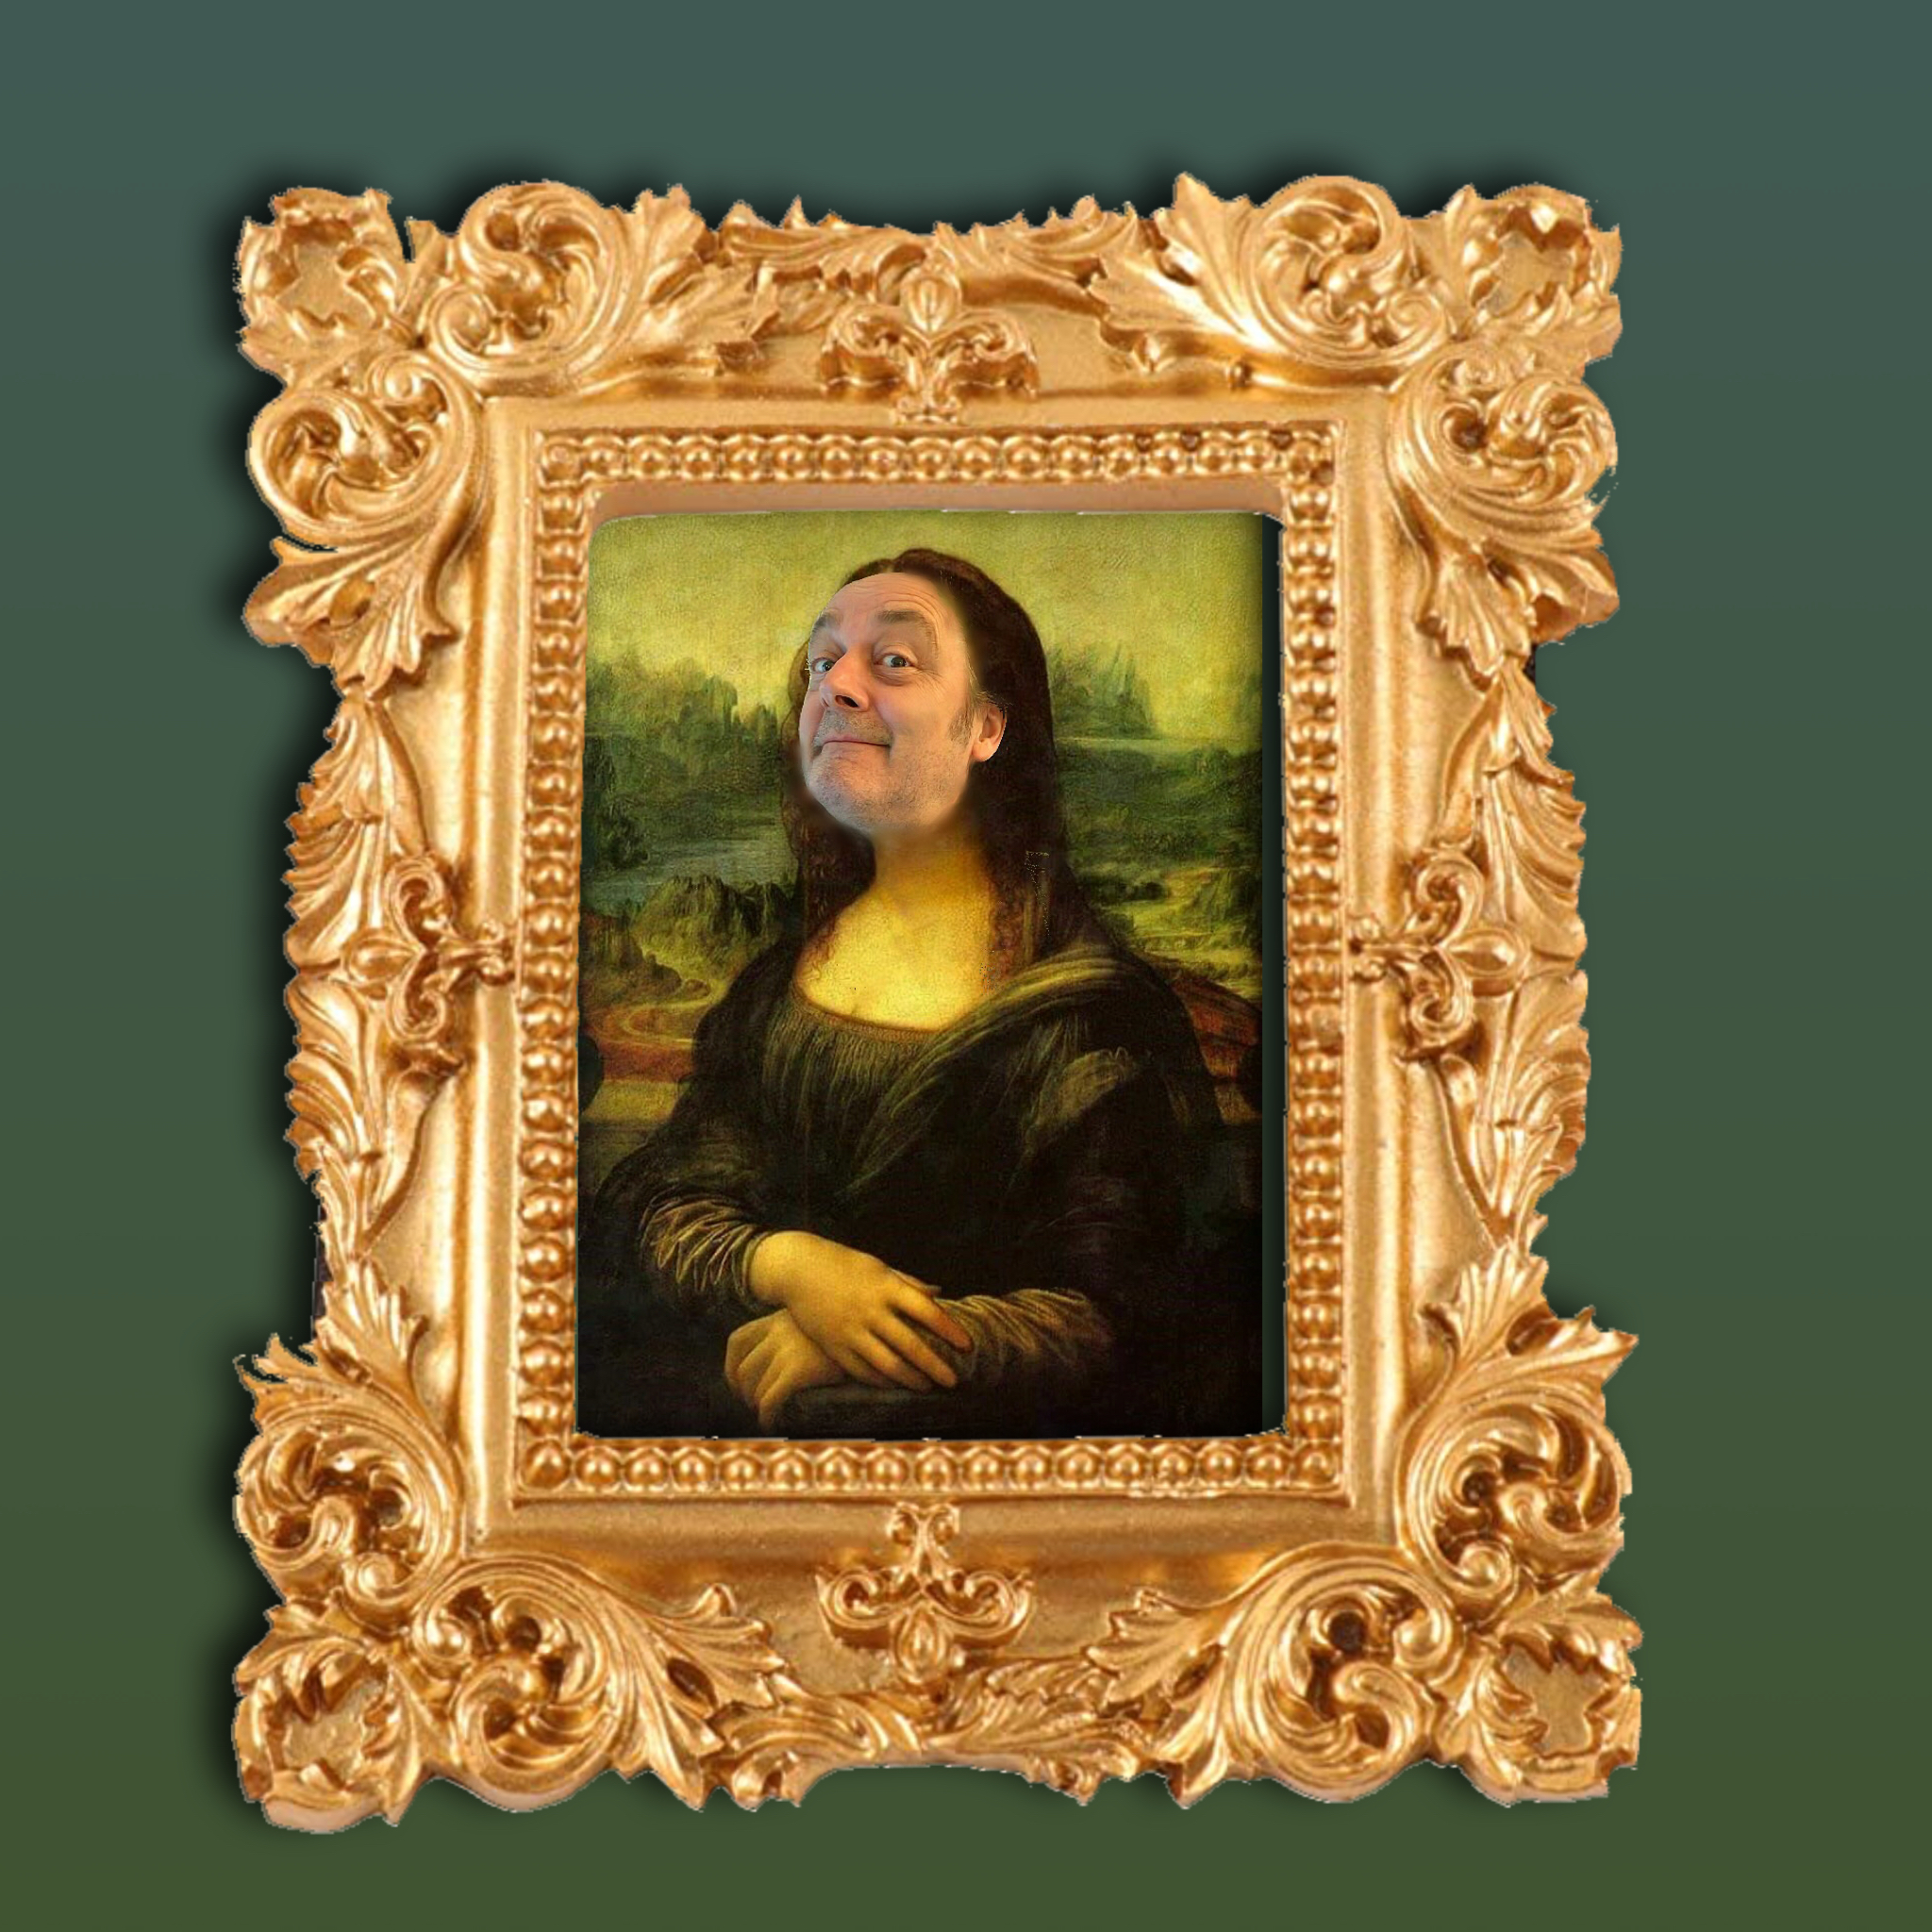 Mona Lisa Gert de Goede cartoon fun vrolijk lol 